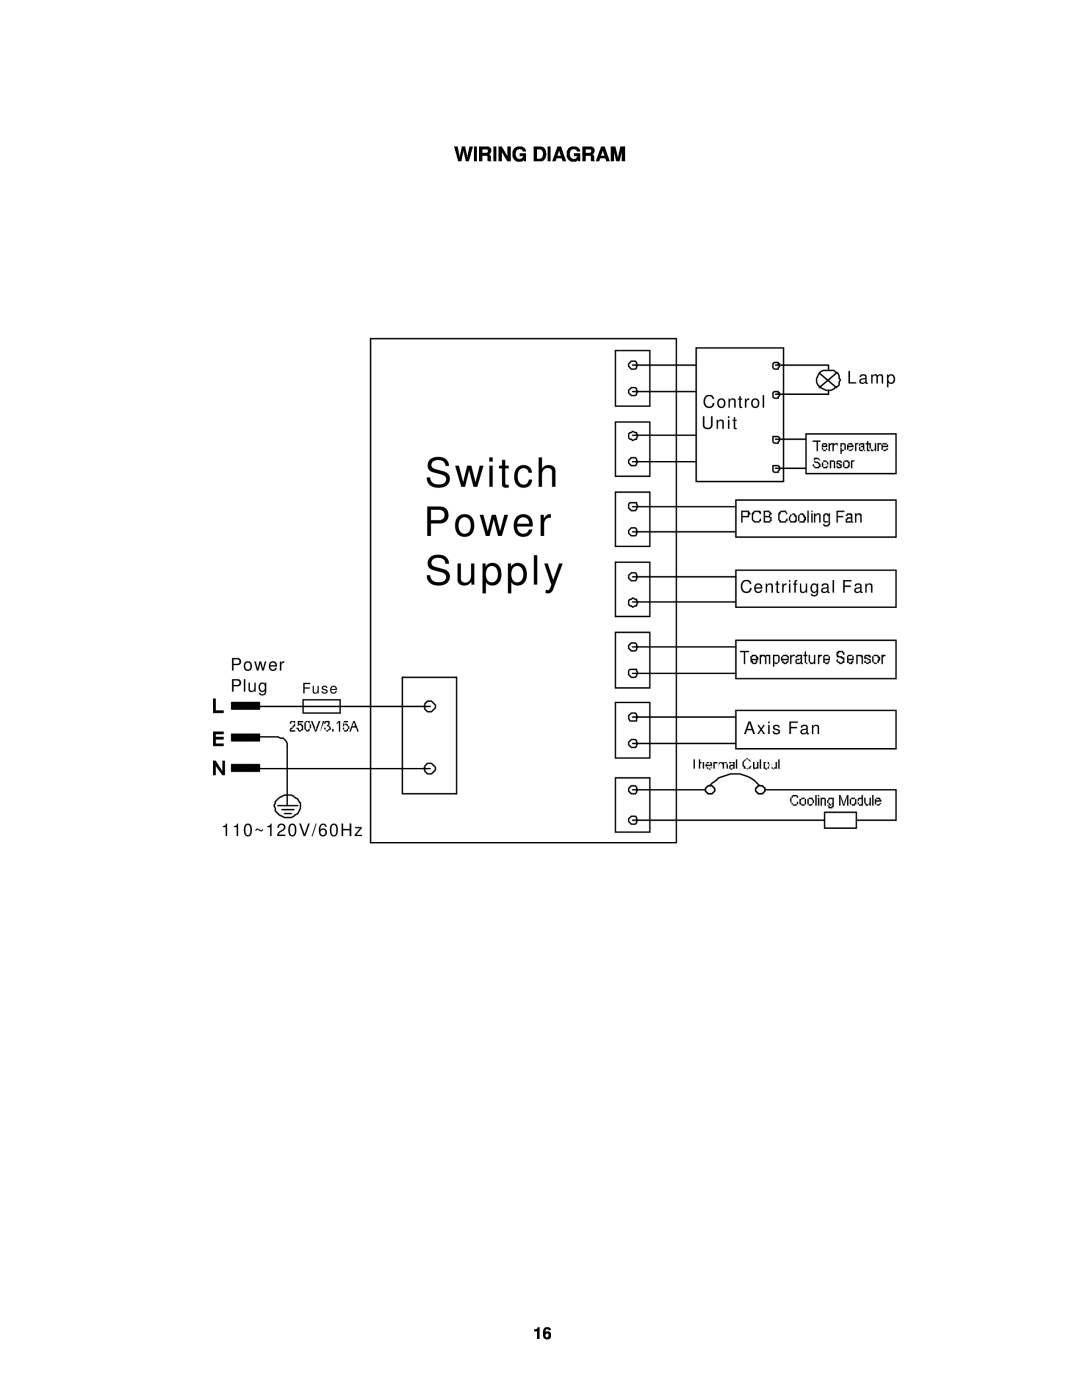 Avanti EC149W Wiring Diagram, Switch Power Supply, Power Plug Fuse 110~120V/60Hz, Lamp, Control, Unit, Centrifugal Fan 